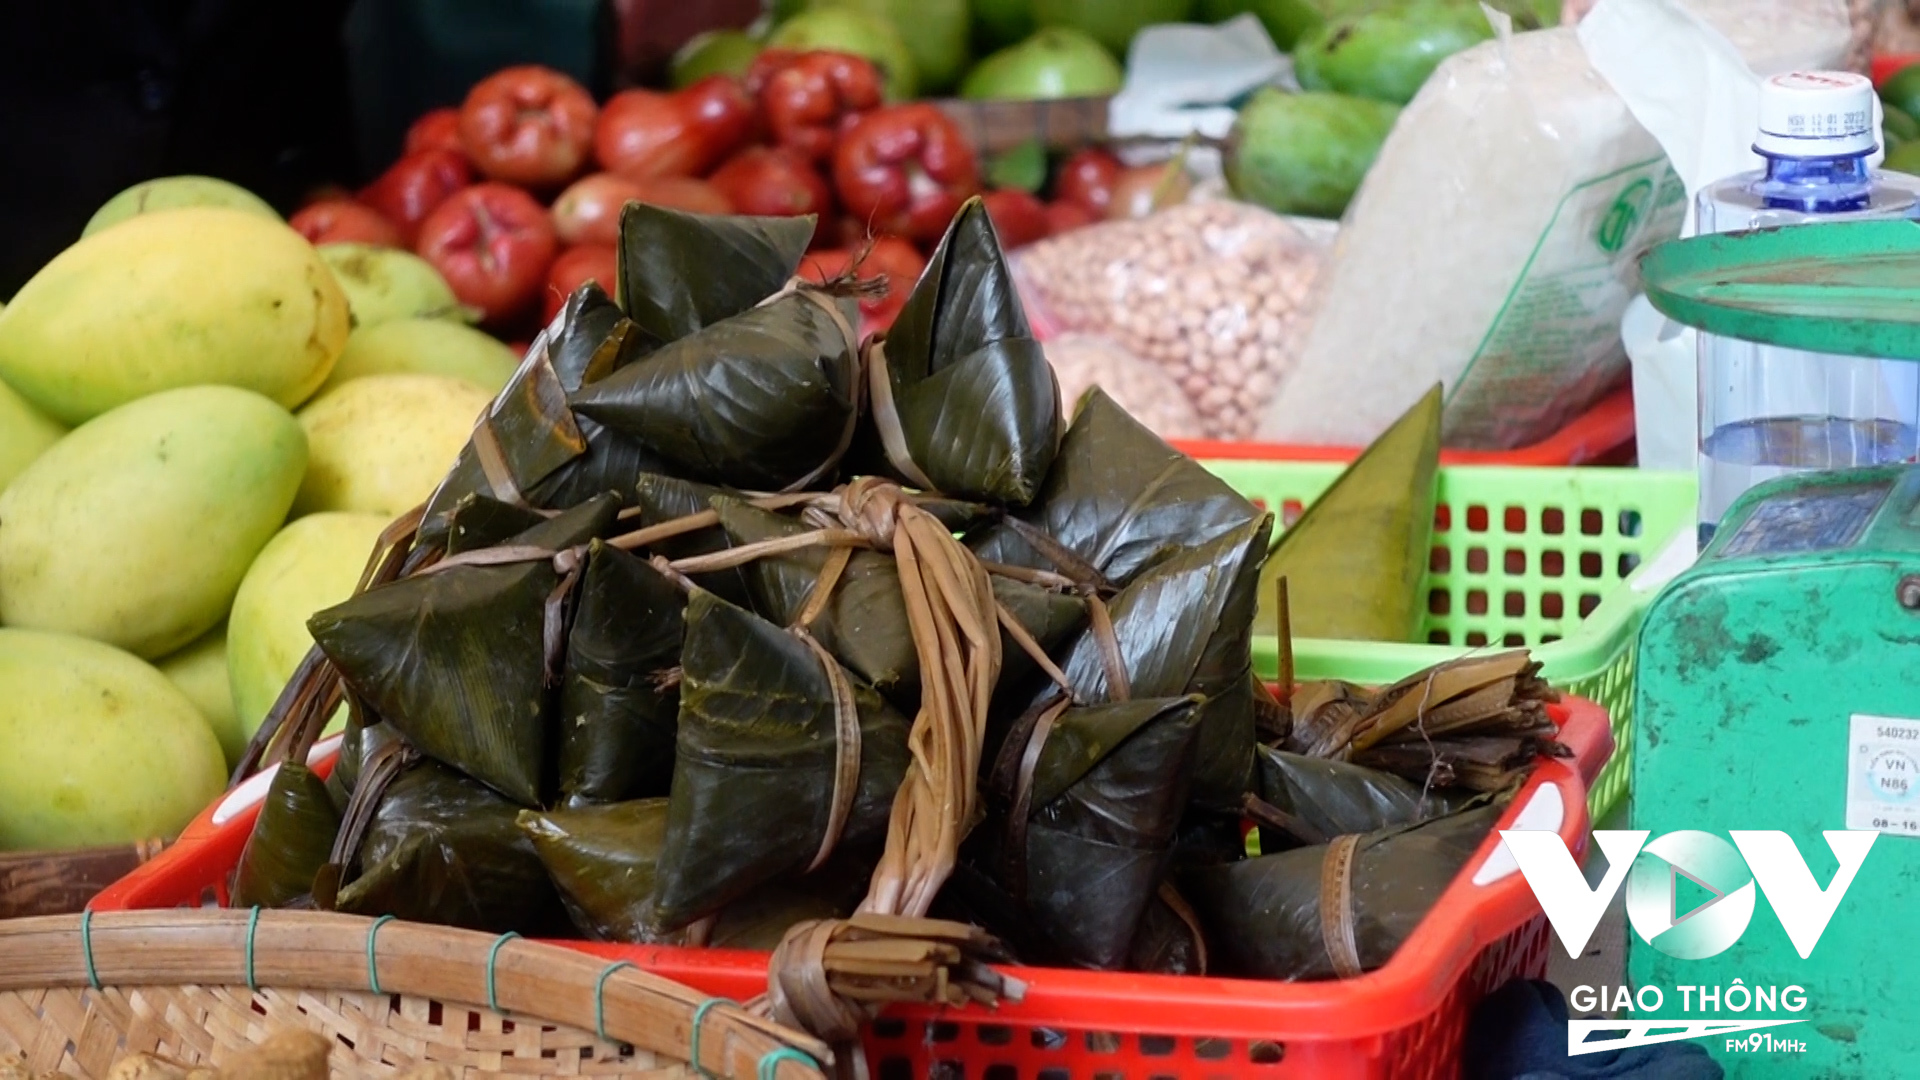 Ngoài những sản phẩm rau củ quả và các món ăn dân dã Việt Nam, nhiều sản phẩm mới mẻ làm từ nguyên liệu quen thuộc như sen, quế, chanh sả, cacao, cà phê, tre nứa, cây dừa… khiến cho phiên chợ đầy màu sắc đa dạng.